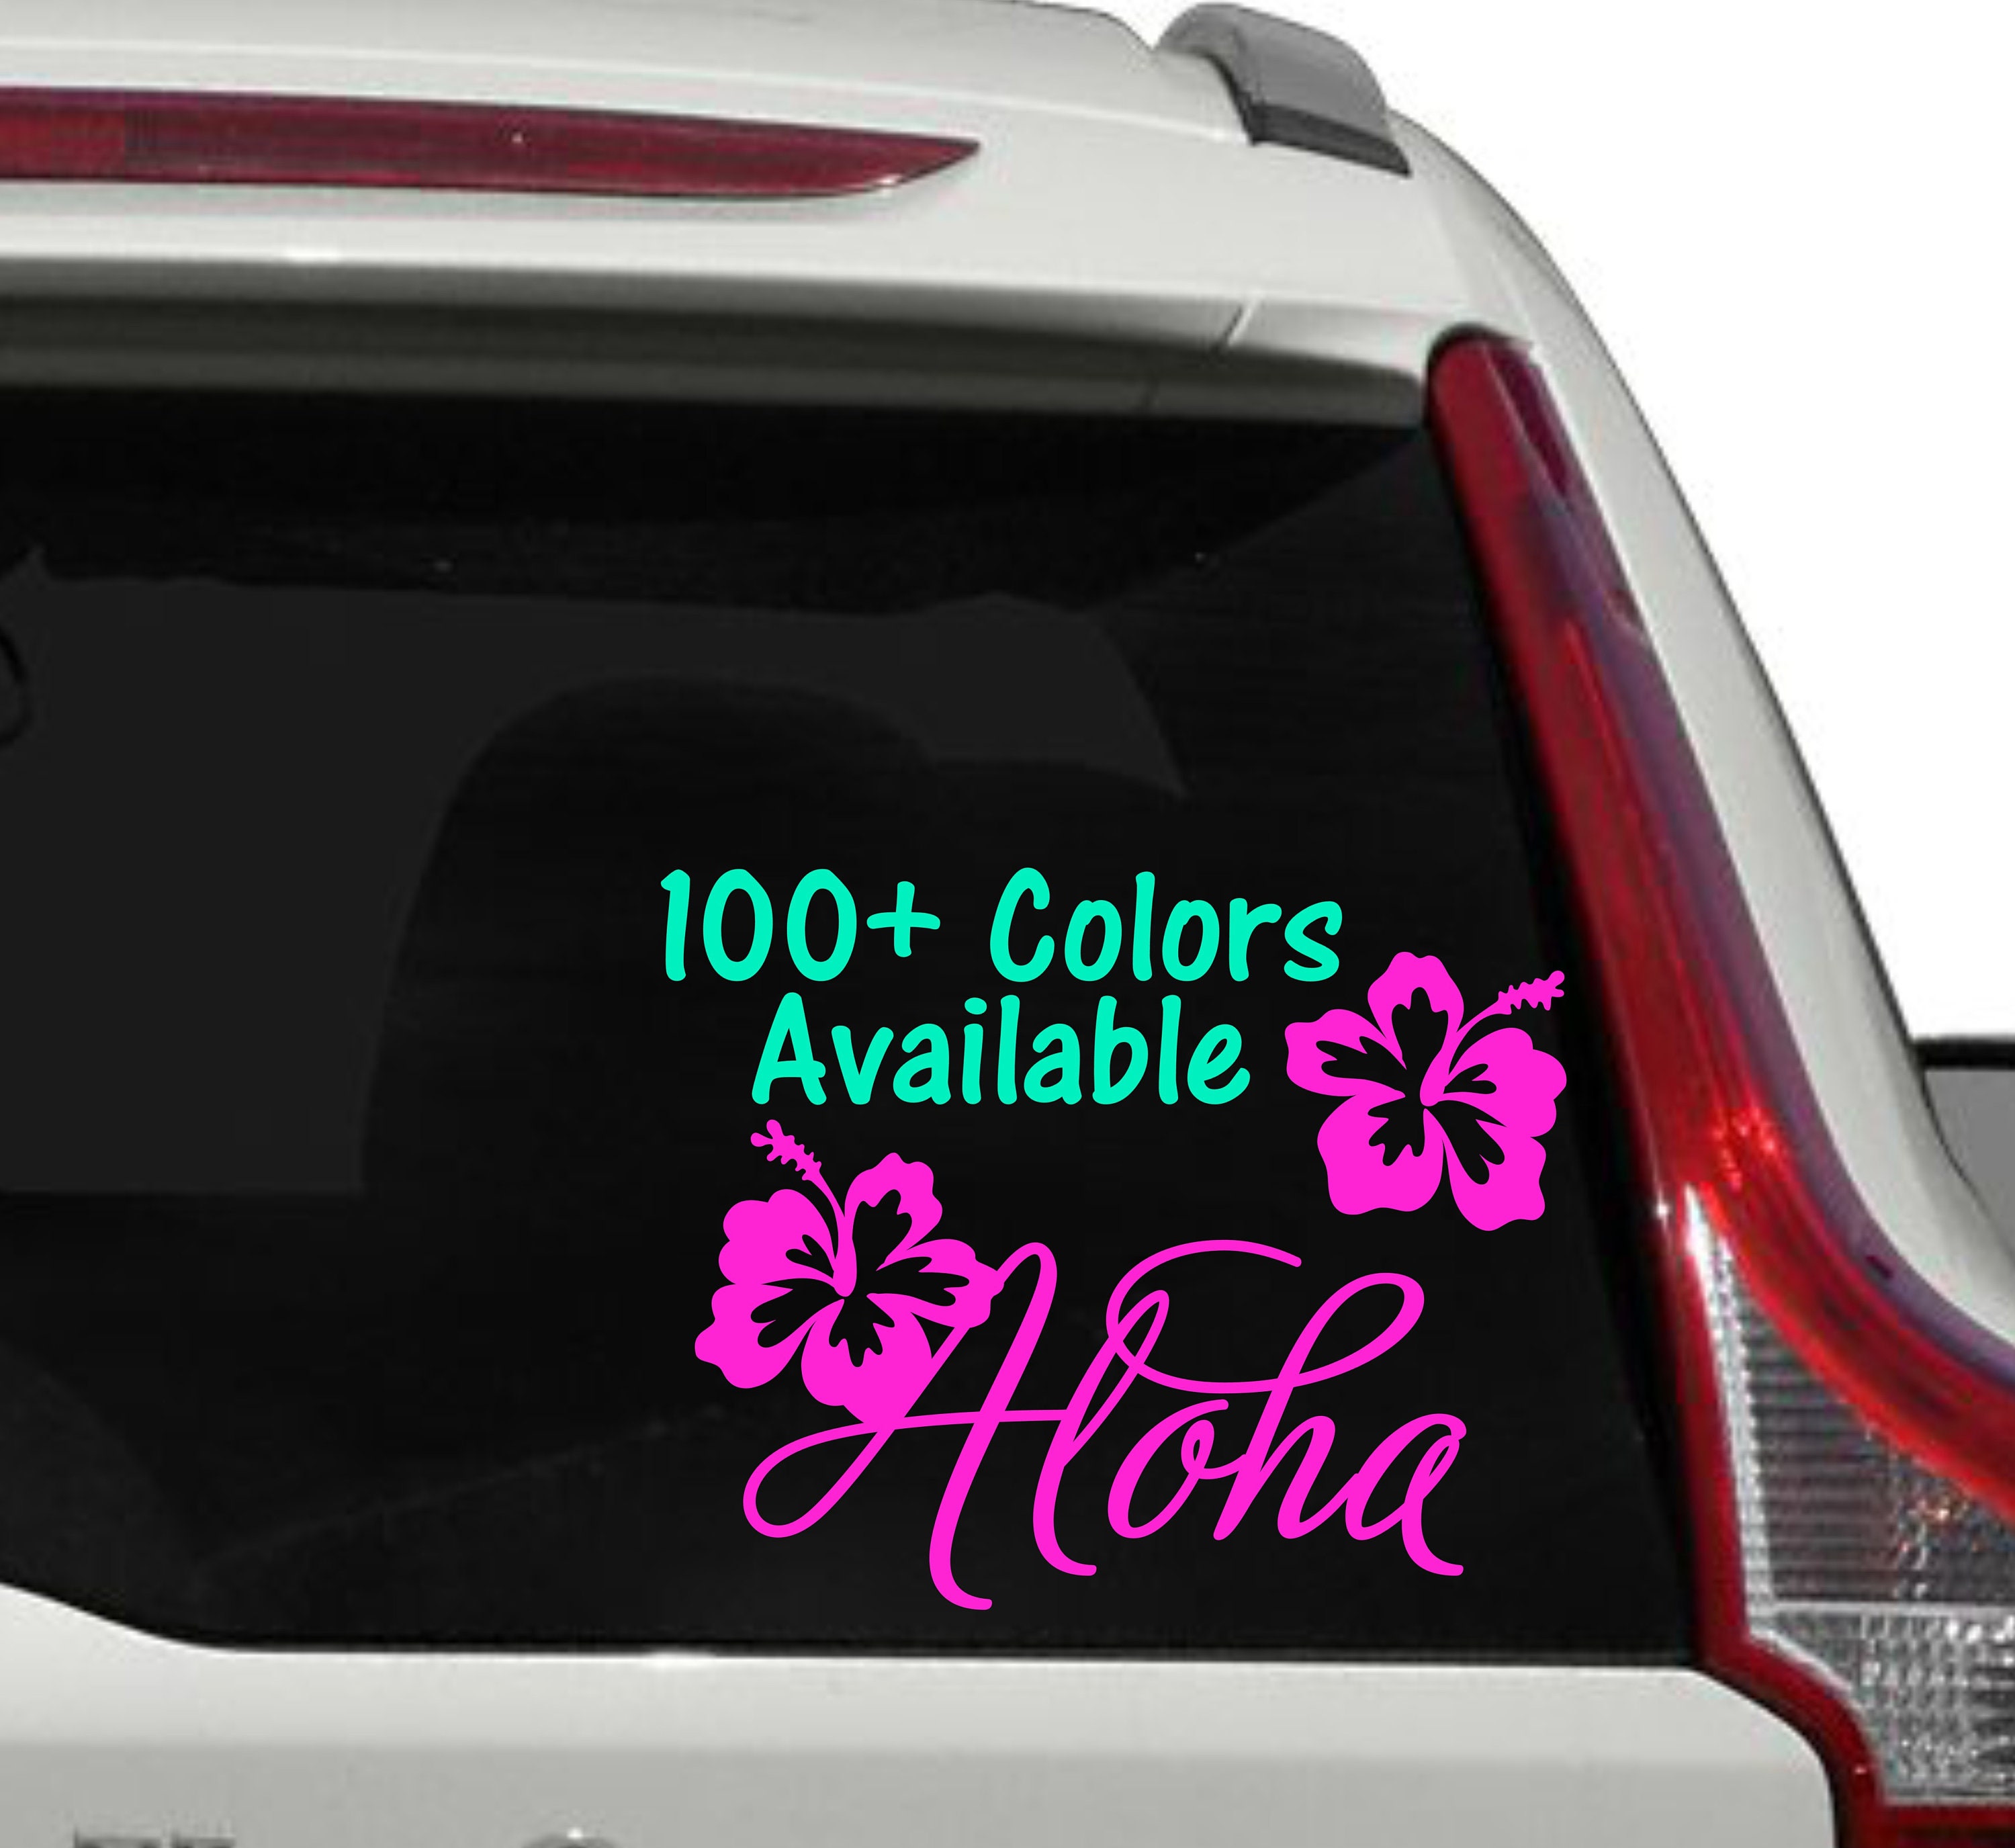 Aloha Decal Hawaii Decal Hawaii Flower Car Window Decal Etsy